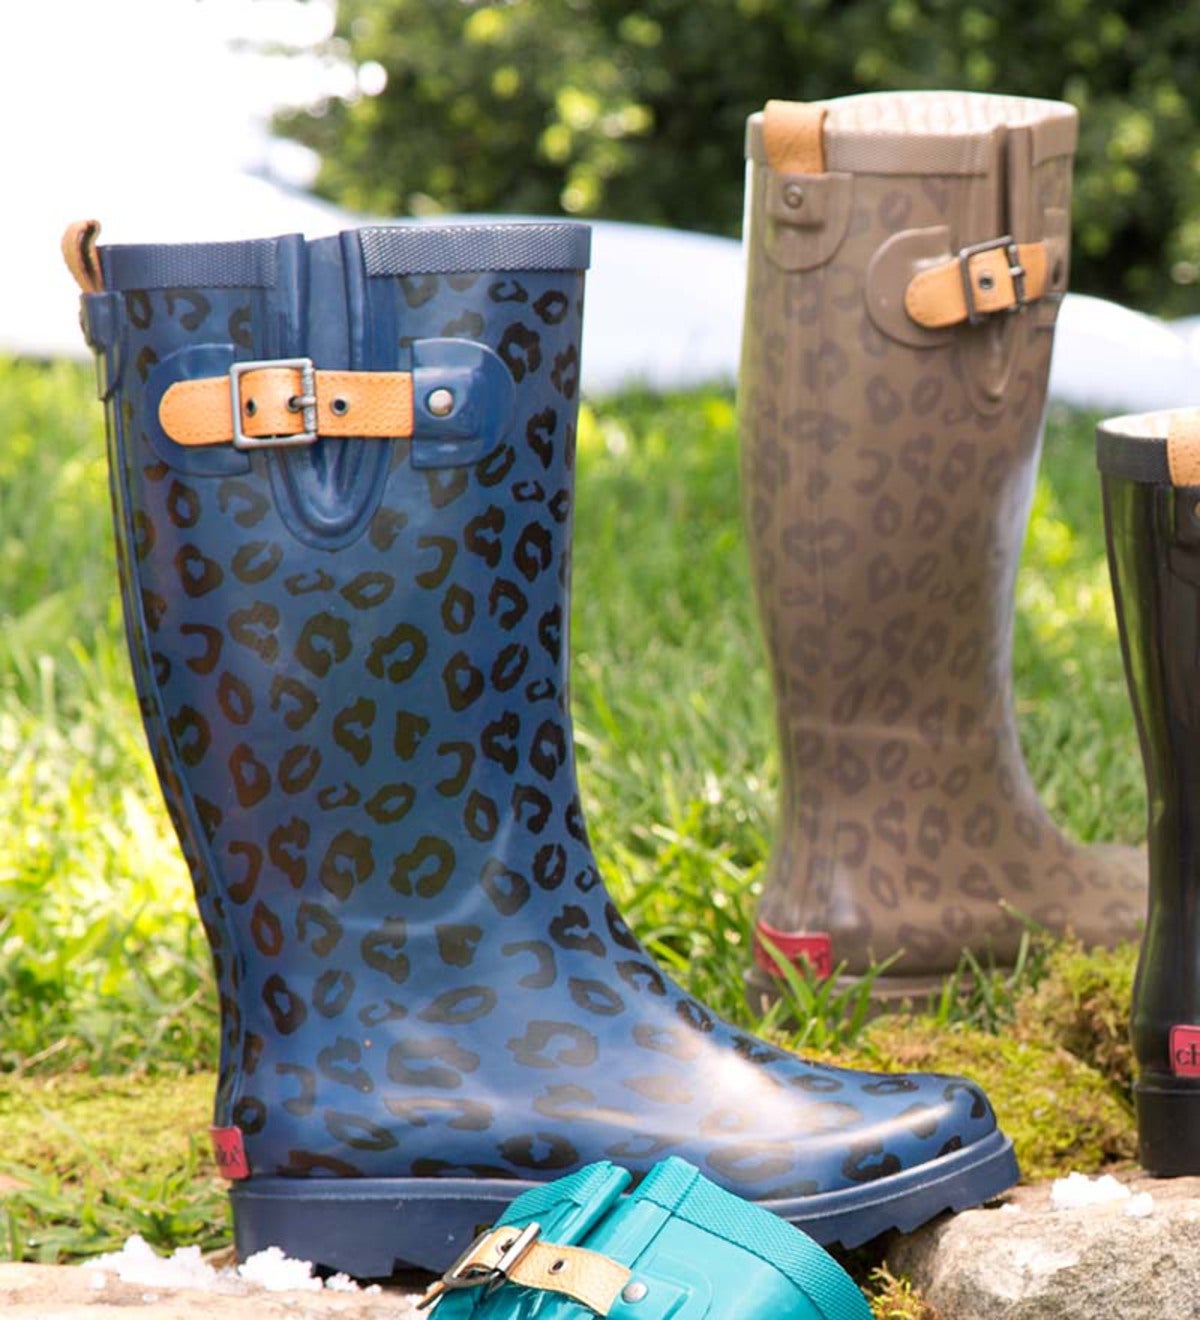 womens leopard print rain boots